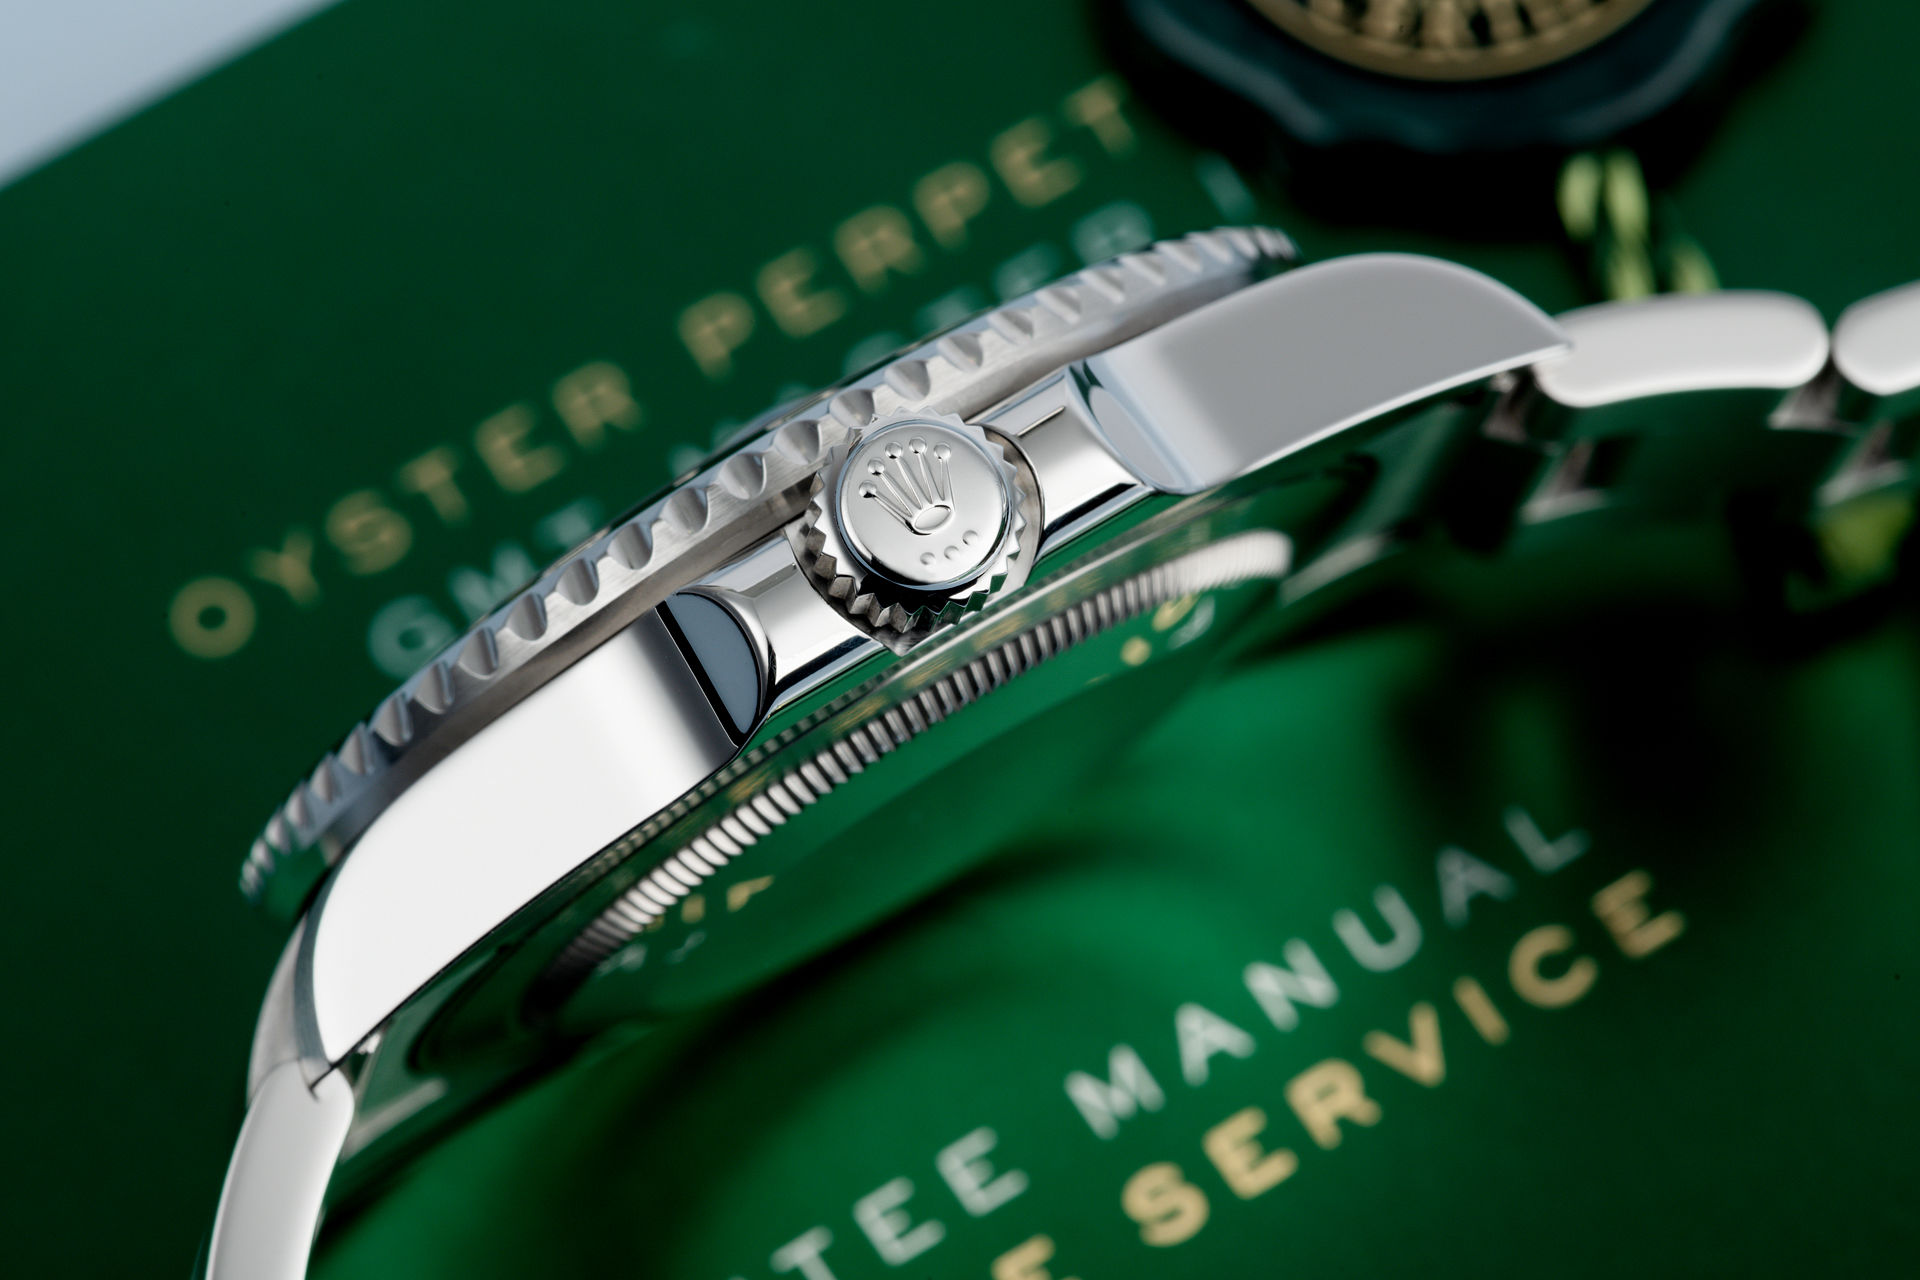 ref 116710LN | Box & Certificate | Rolex GMT-Master II